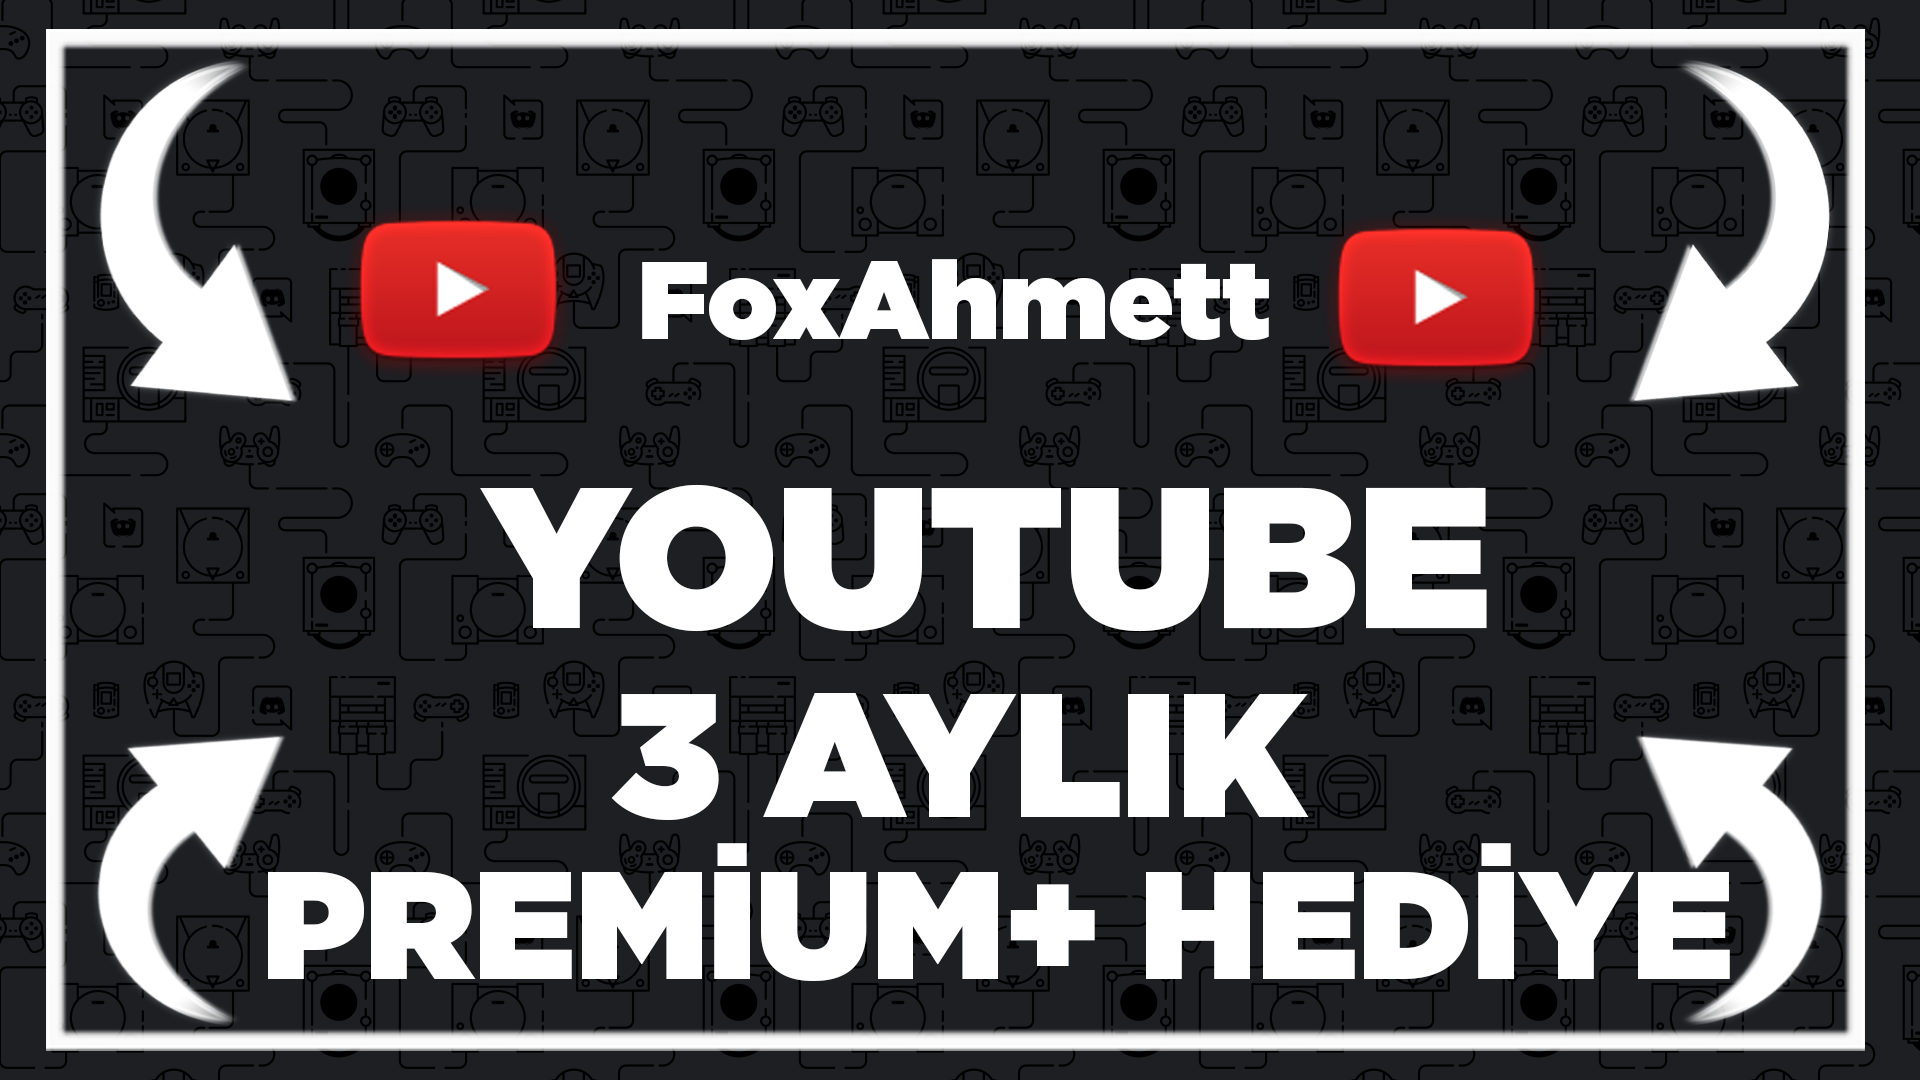 Youtube Premium 3 Aylık Aile Yönetici Hesap 